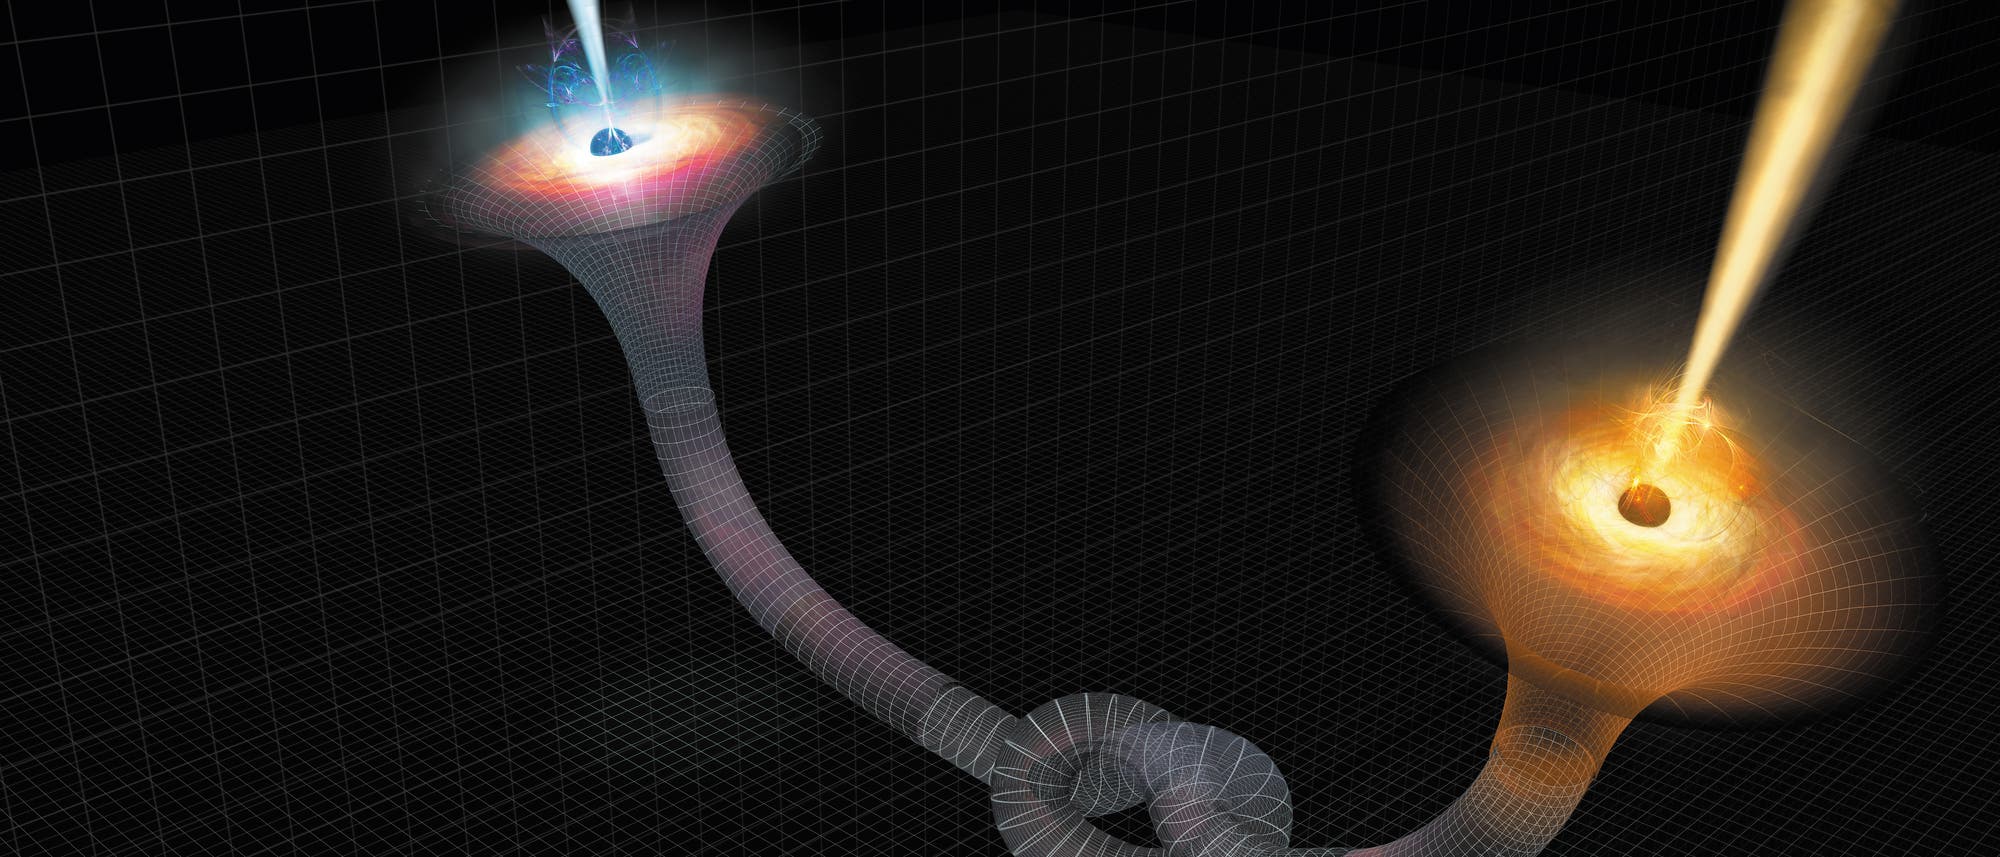 Schwarze Löcher könnten auf überraschende Weise verbunden sein, hier illustriert durch einen Knoten in der Struktur von Raum und Zeit.